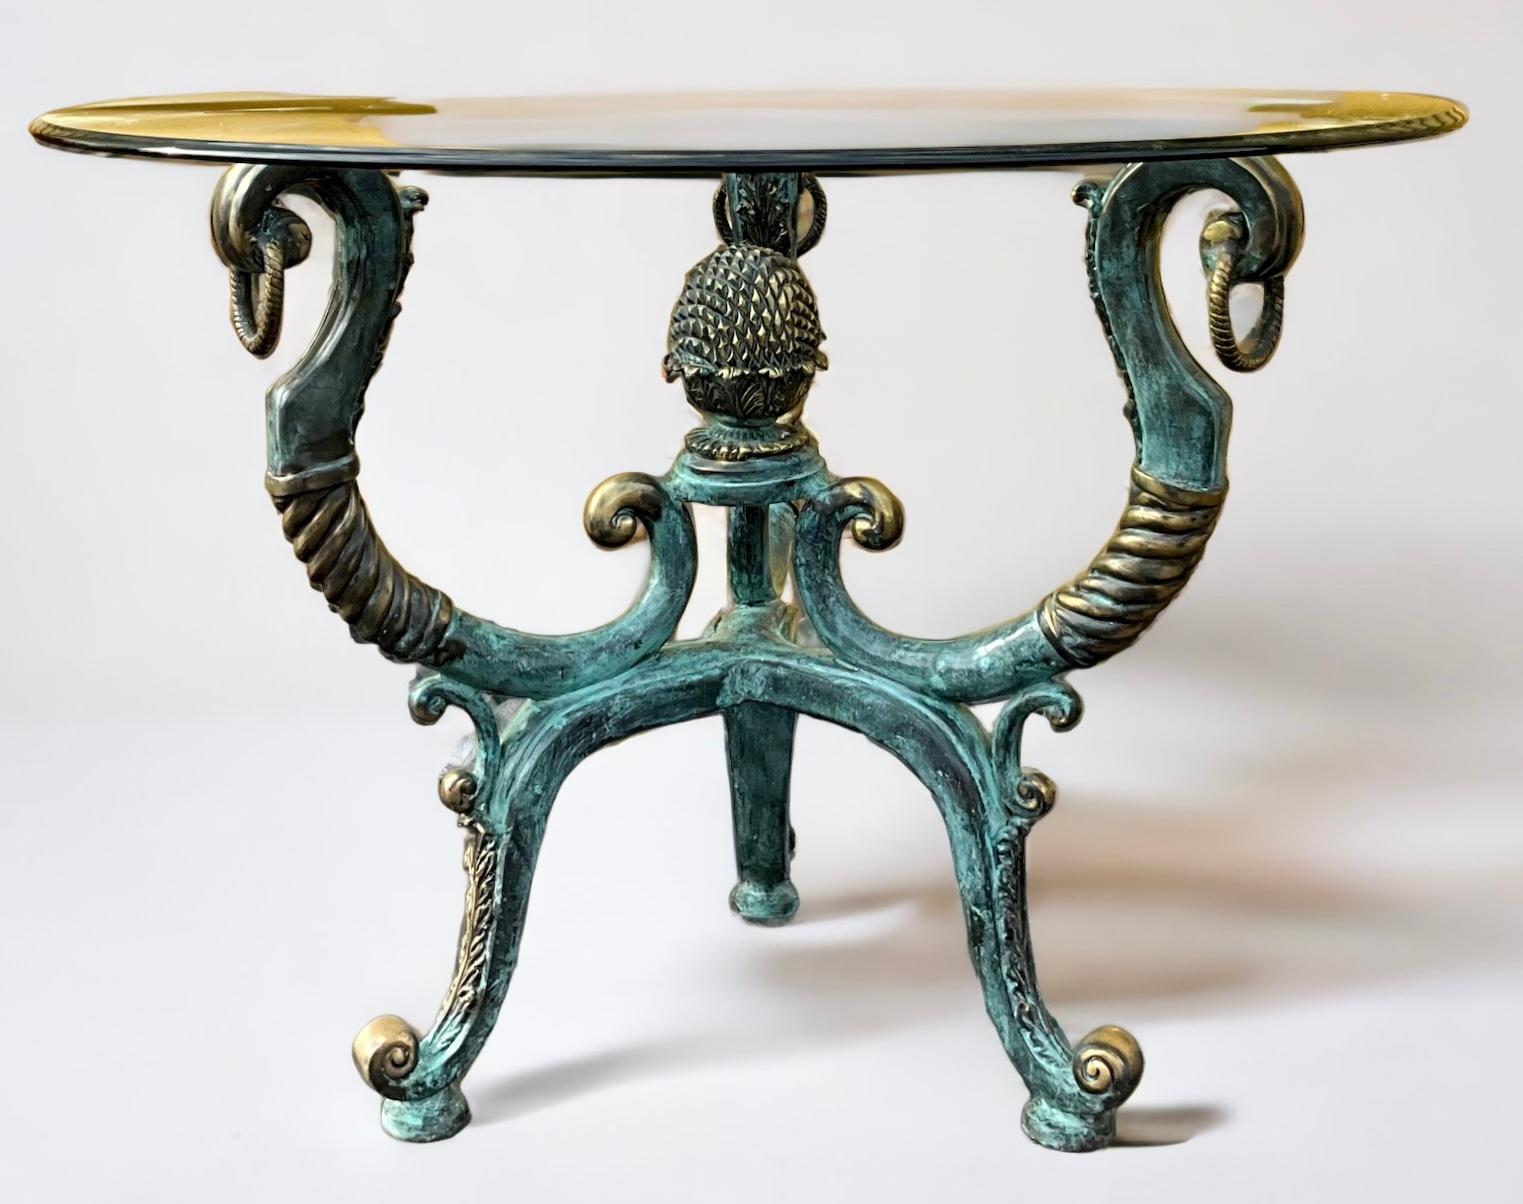 Il s'agit d'une table centrale de style néoclassique en laiton patiné, réalisée par Labarge. La base est suffisamment large pour supporter un morceau de verre plus grand. Il est en très bon état. Les pièces de Labarge étaient typiquement italiennes.